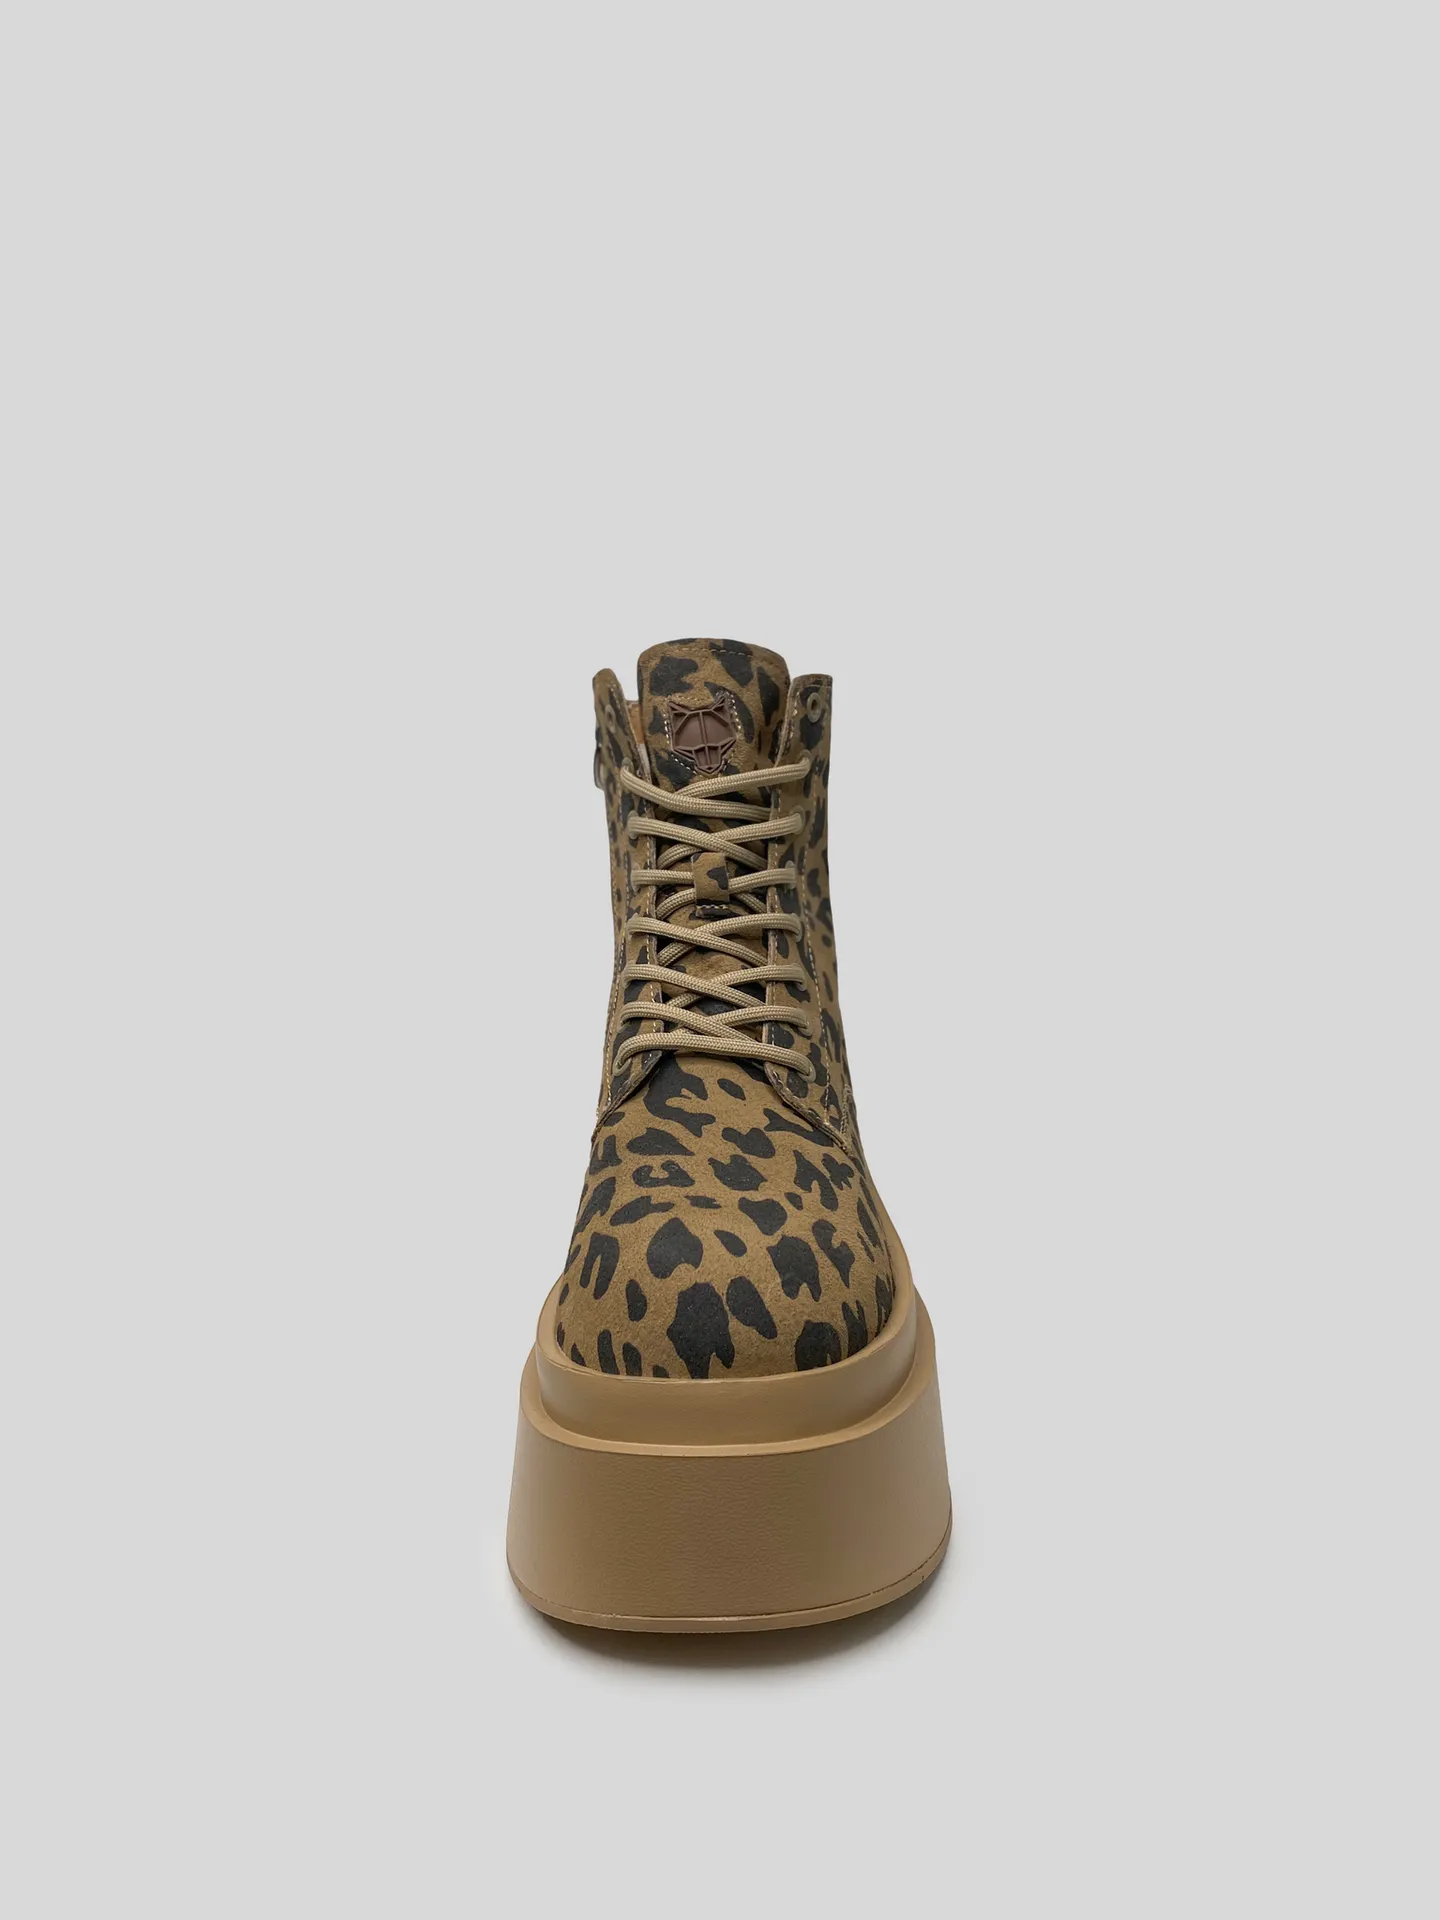 Ботинки Naked Wolfe леопардовые на высокой подошве купить